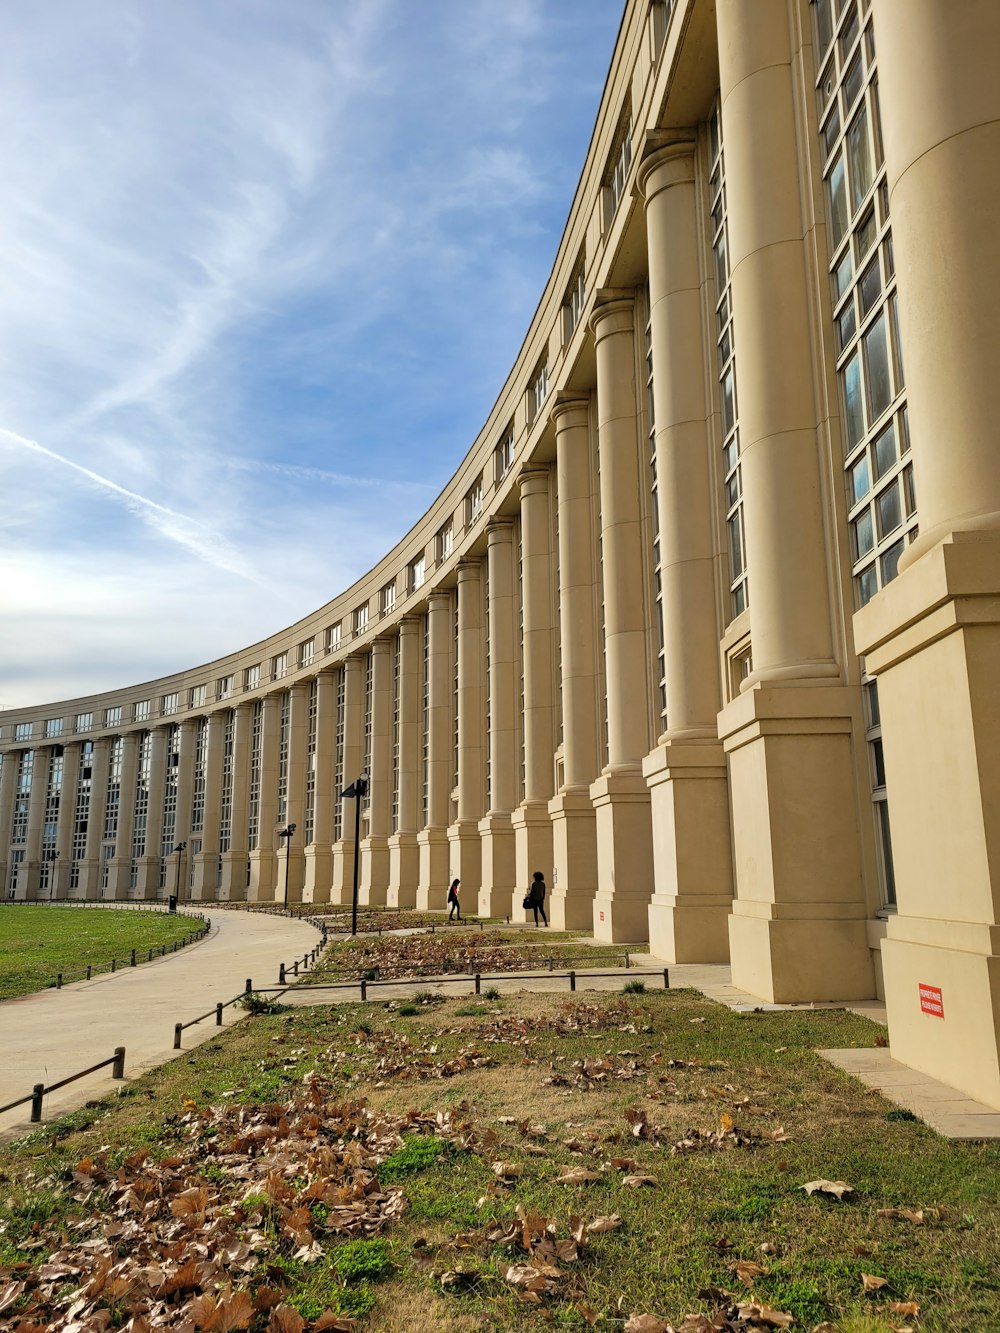 un grand bâtiment avec des colonnes et de l’herbe devant lui